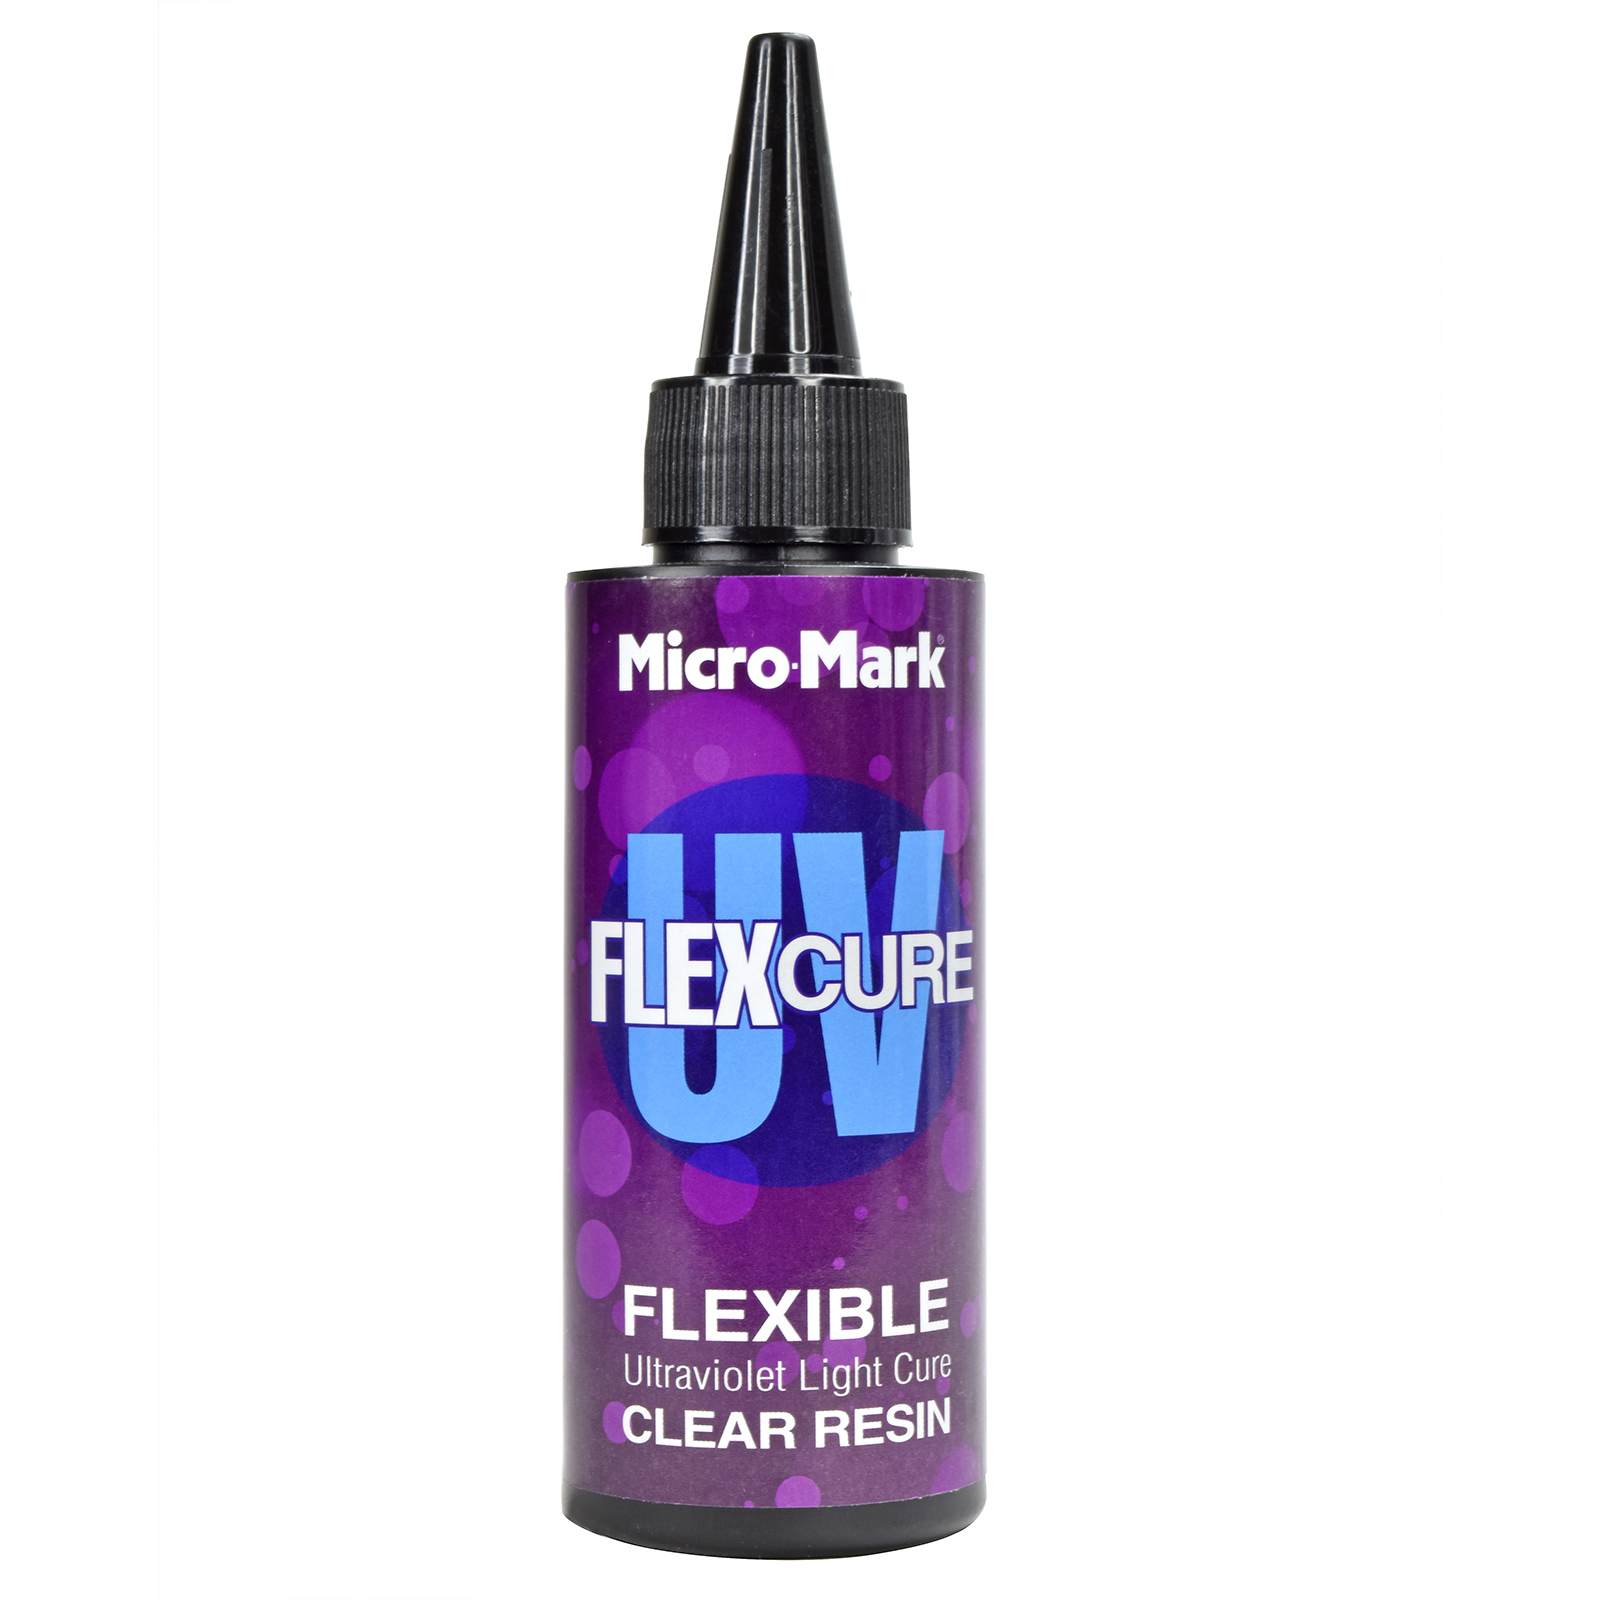 Micro-Mark FlexCure UV Clear Flexib